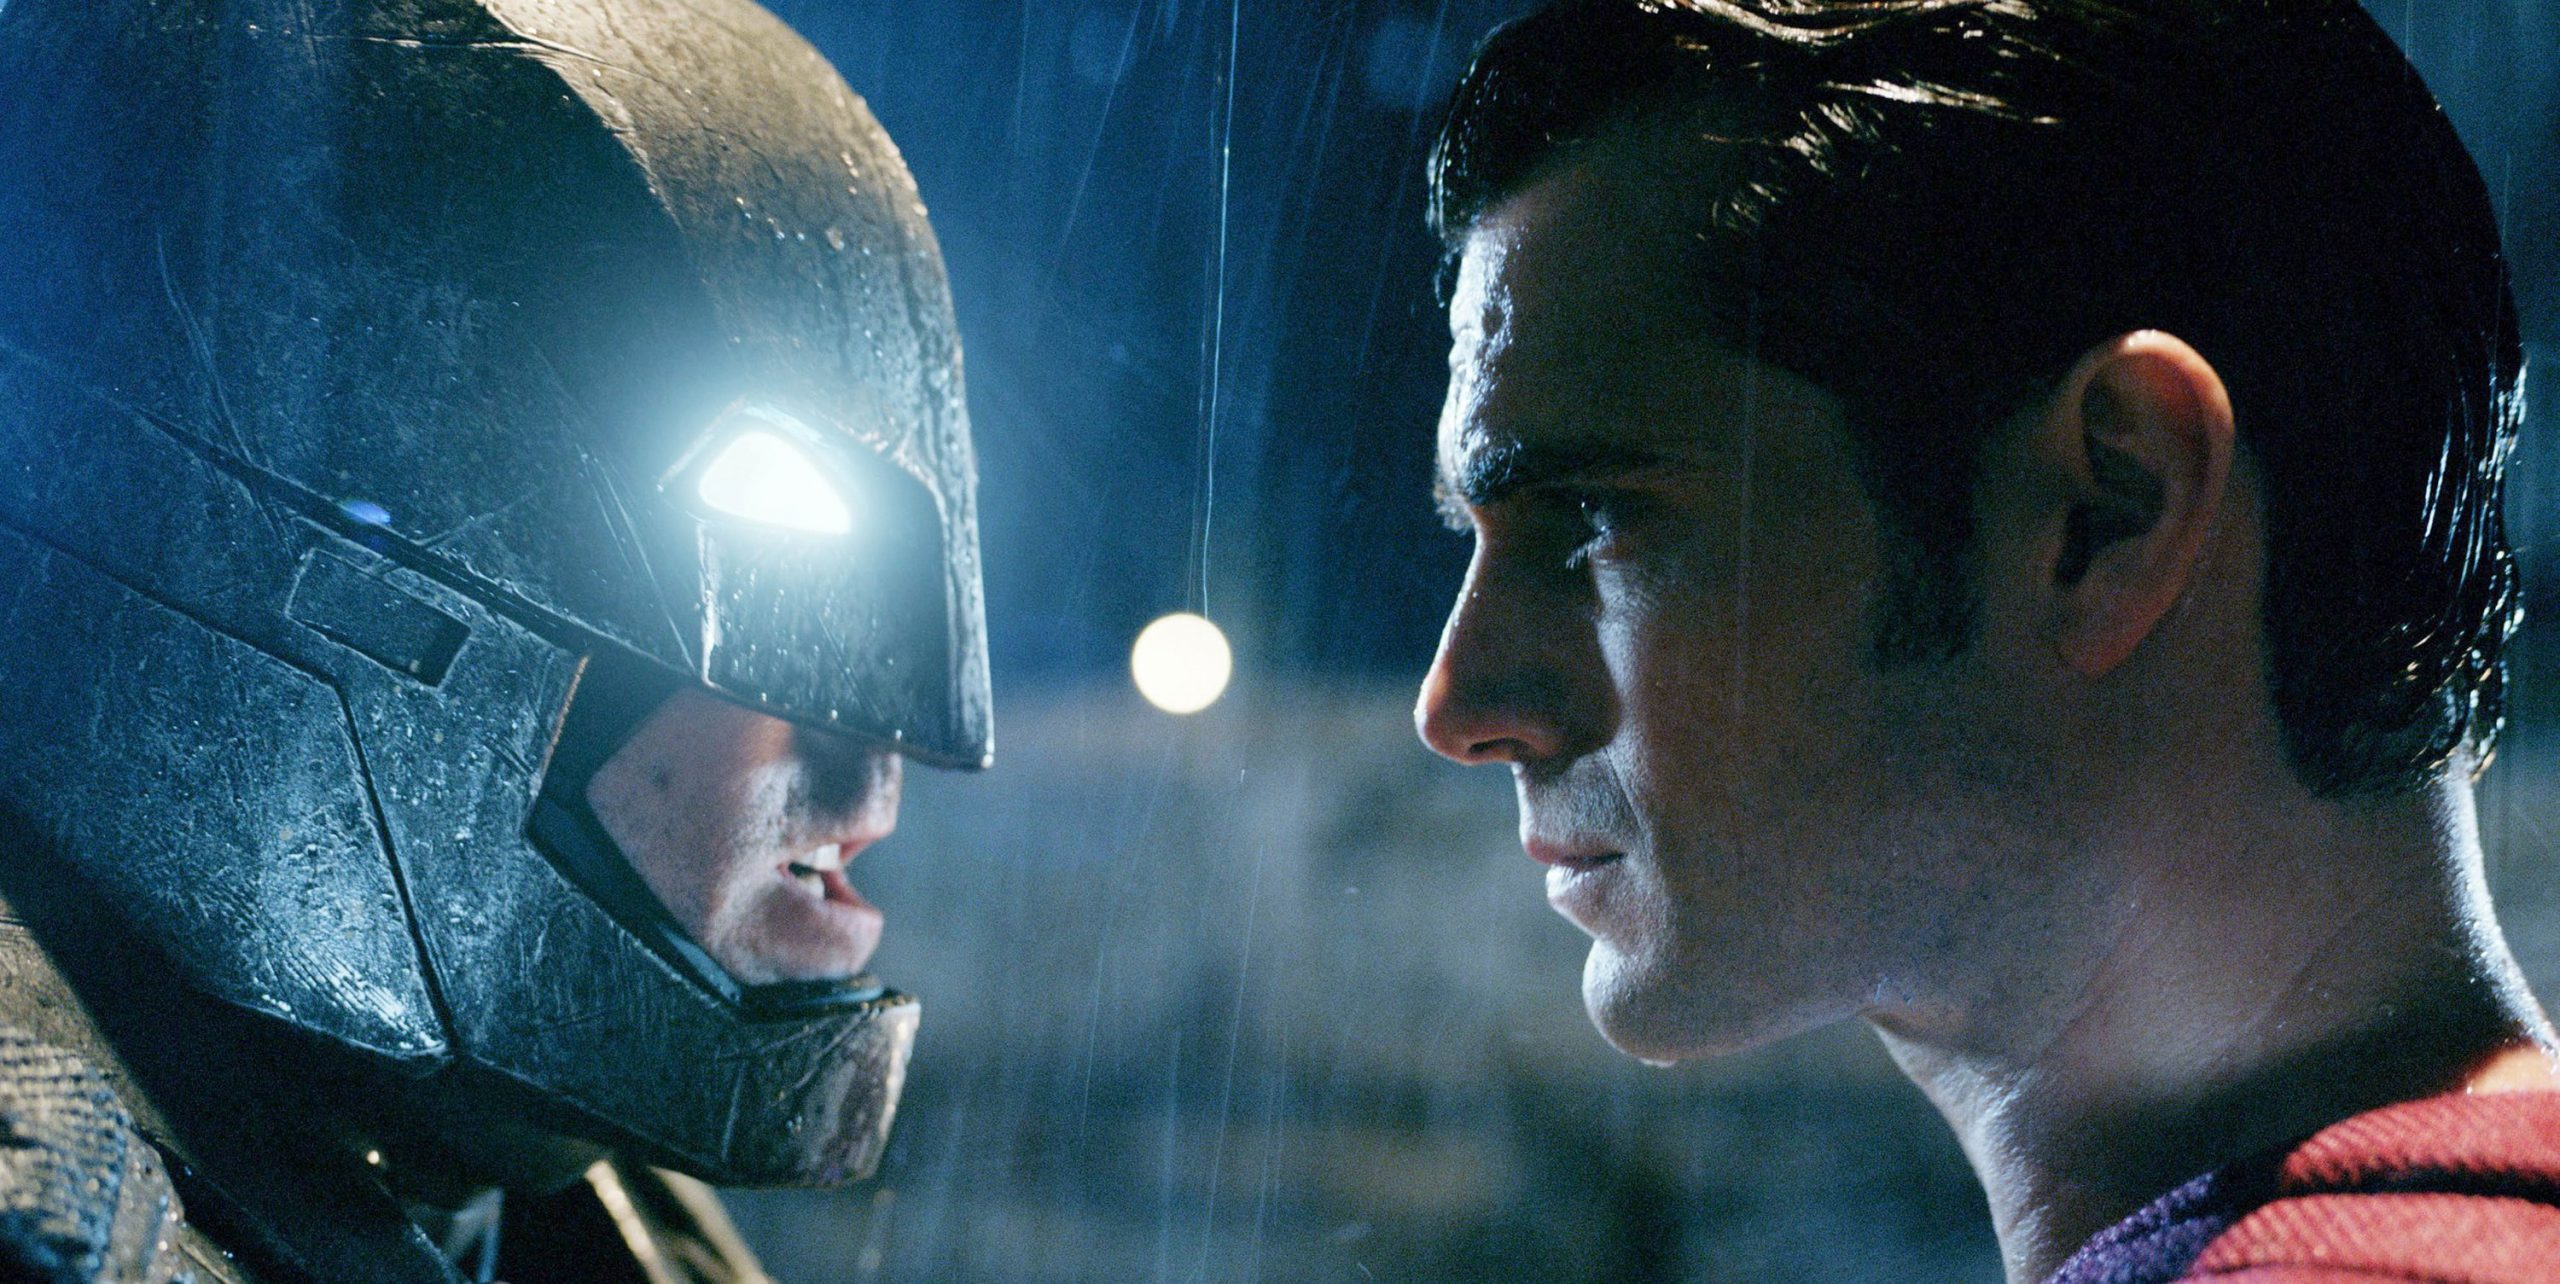 «Бэтмен против Супермена: На заре справедливости». Разгромный обзор 5